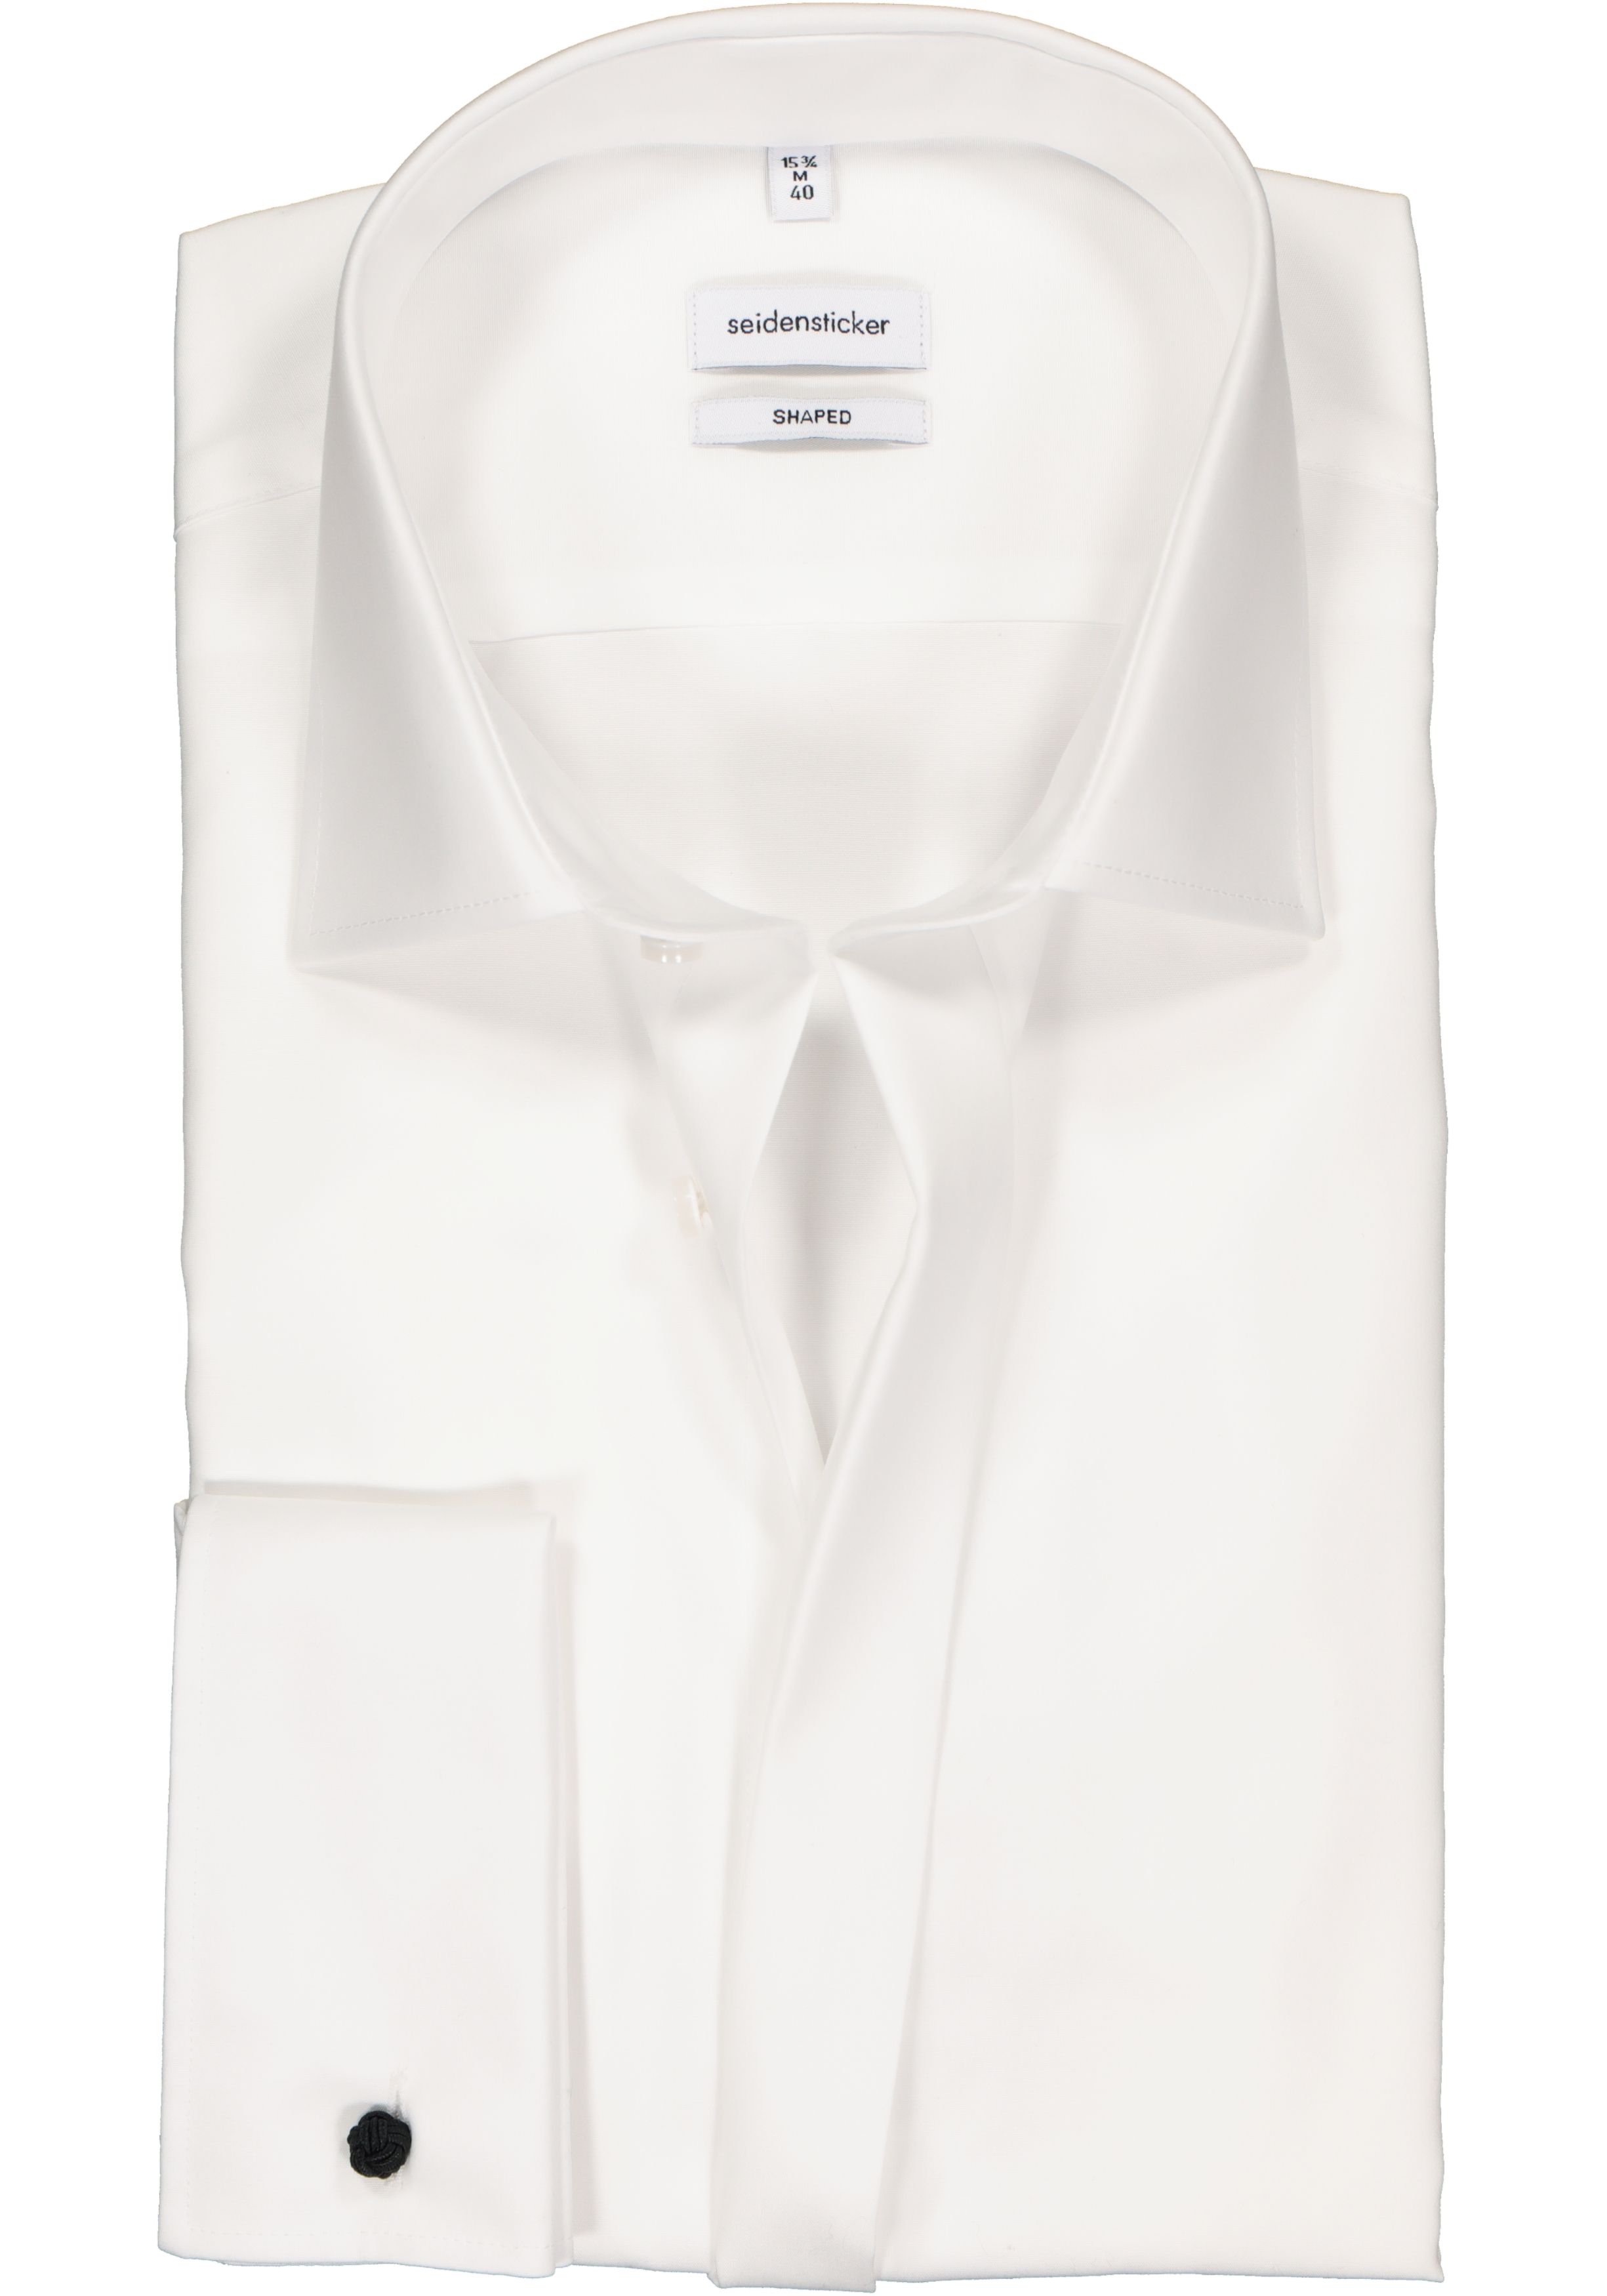 Seidensticker shaped fit overhemd, dubbele manchet met Kent kraag, wit